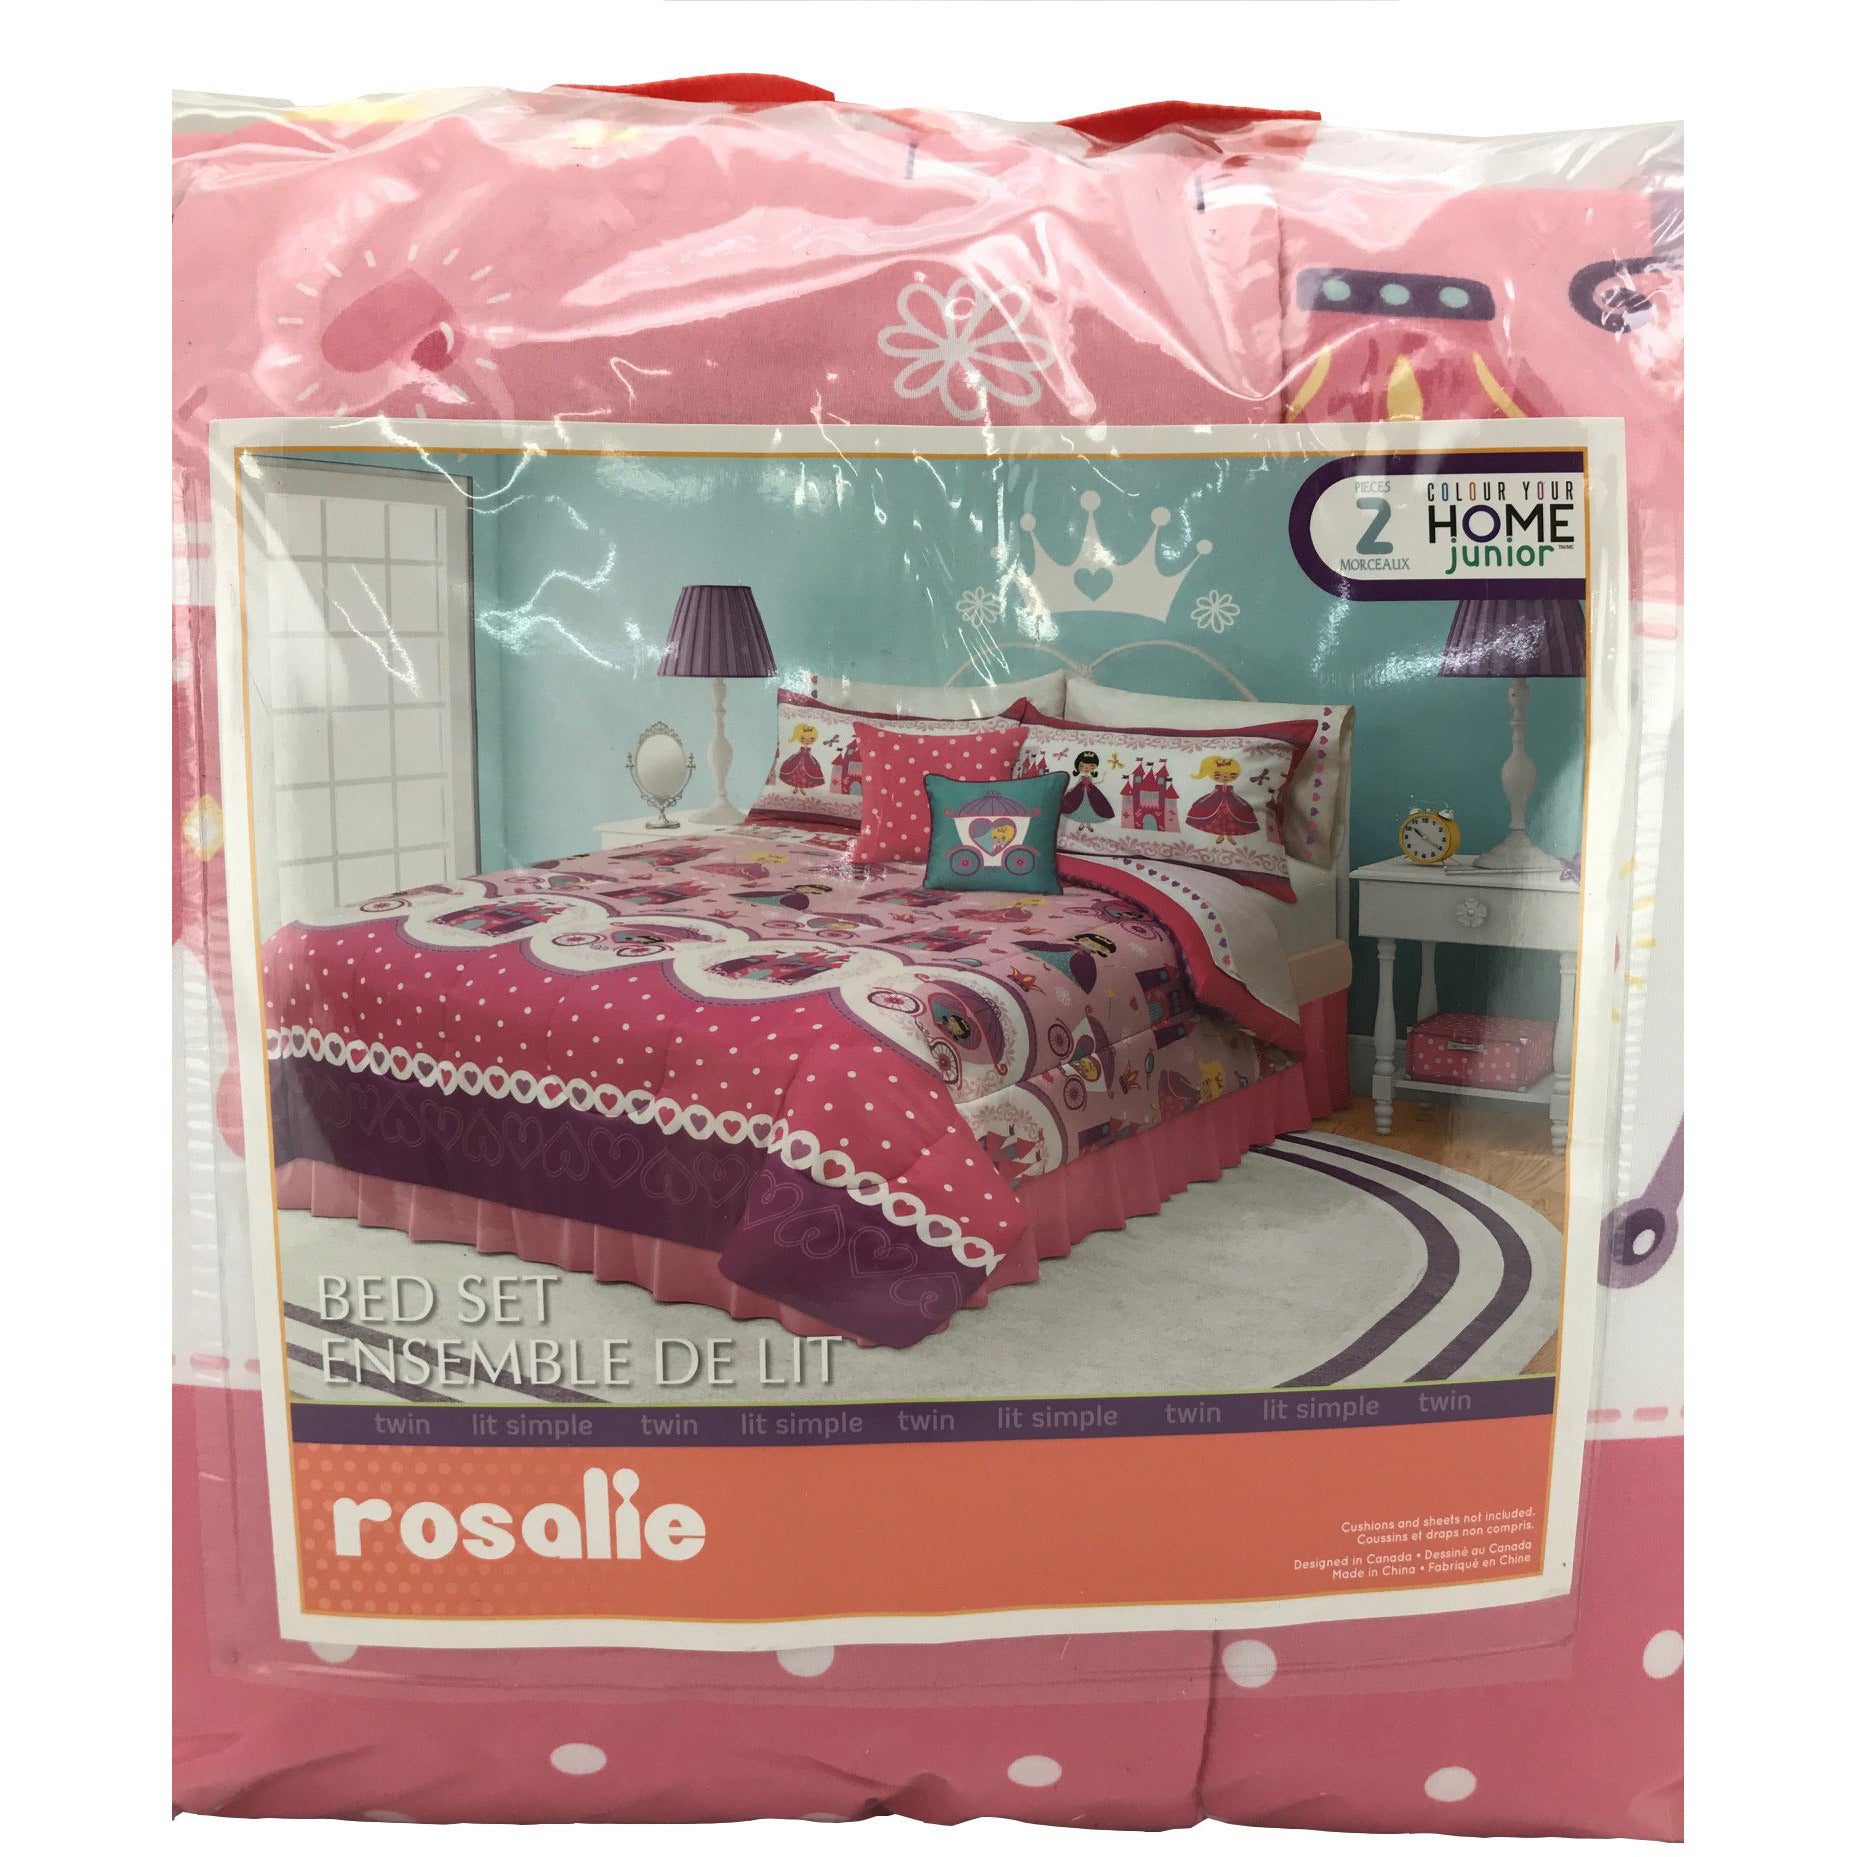 Rosalie Kids Bed in a bag comforter set 2 piece set